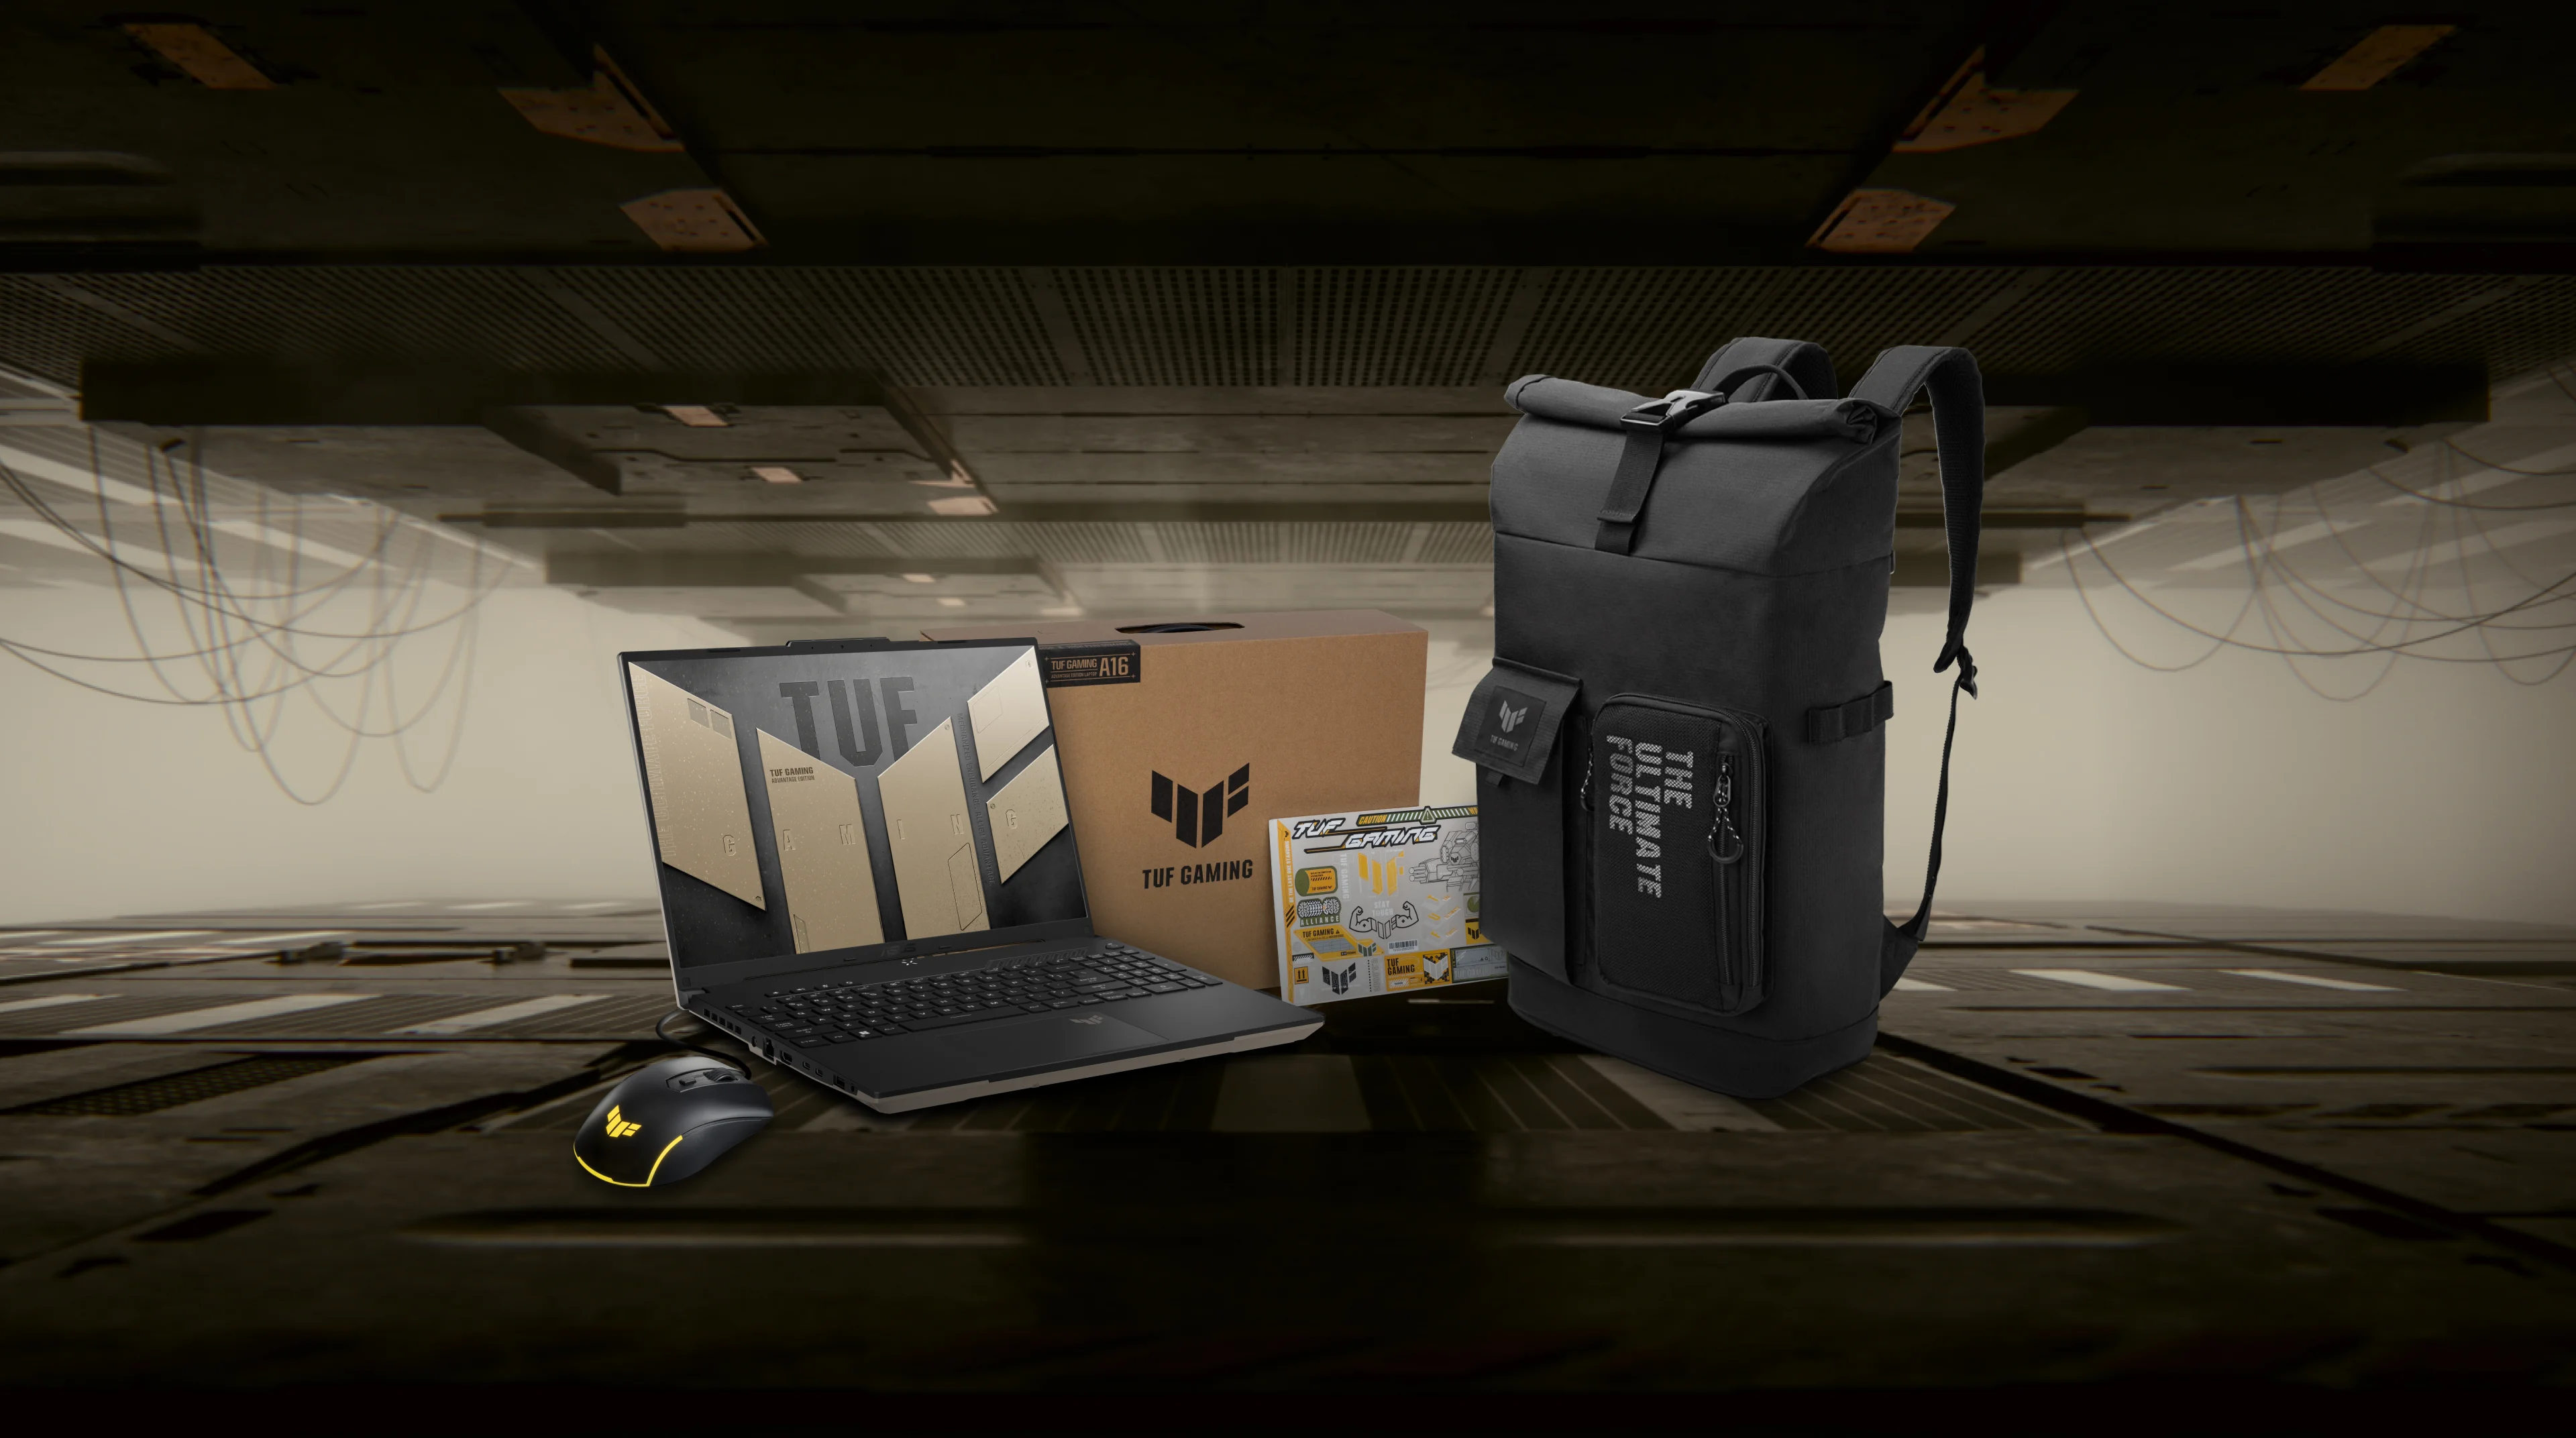 De TUF Gaming A16 laptop naast de muis, rugzak en doos met TUF-sticker.